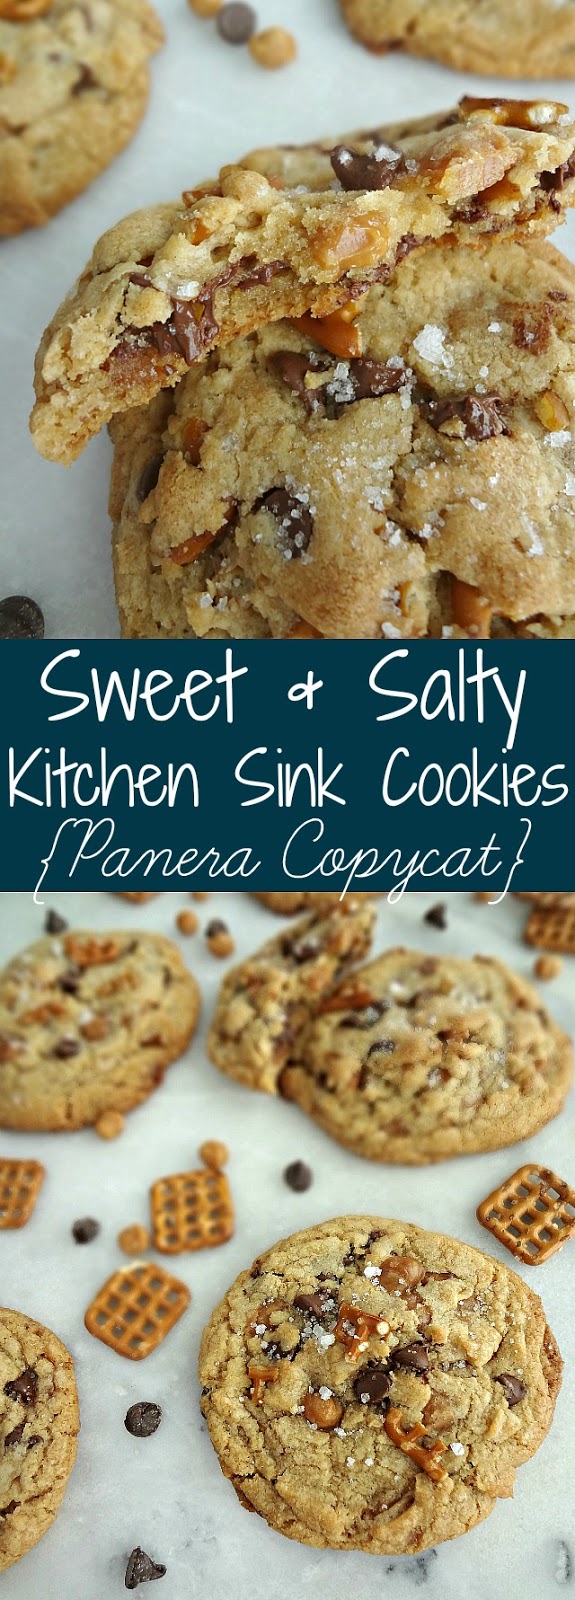 Sweet & Salty Kitchen Sink Cookies {Panera Copycat}